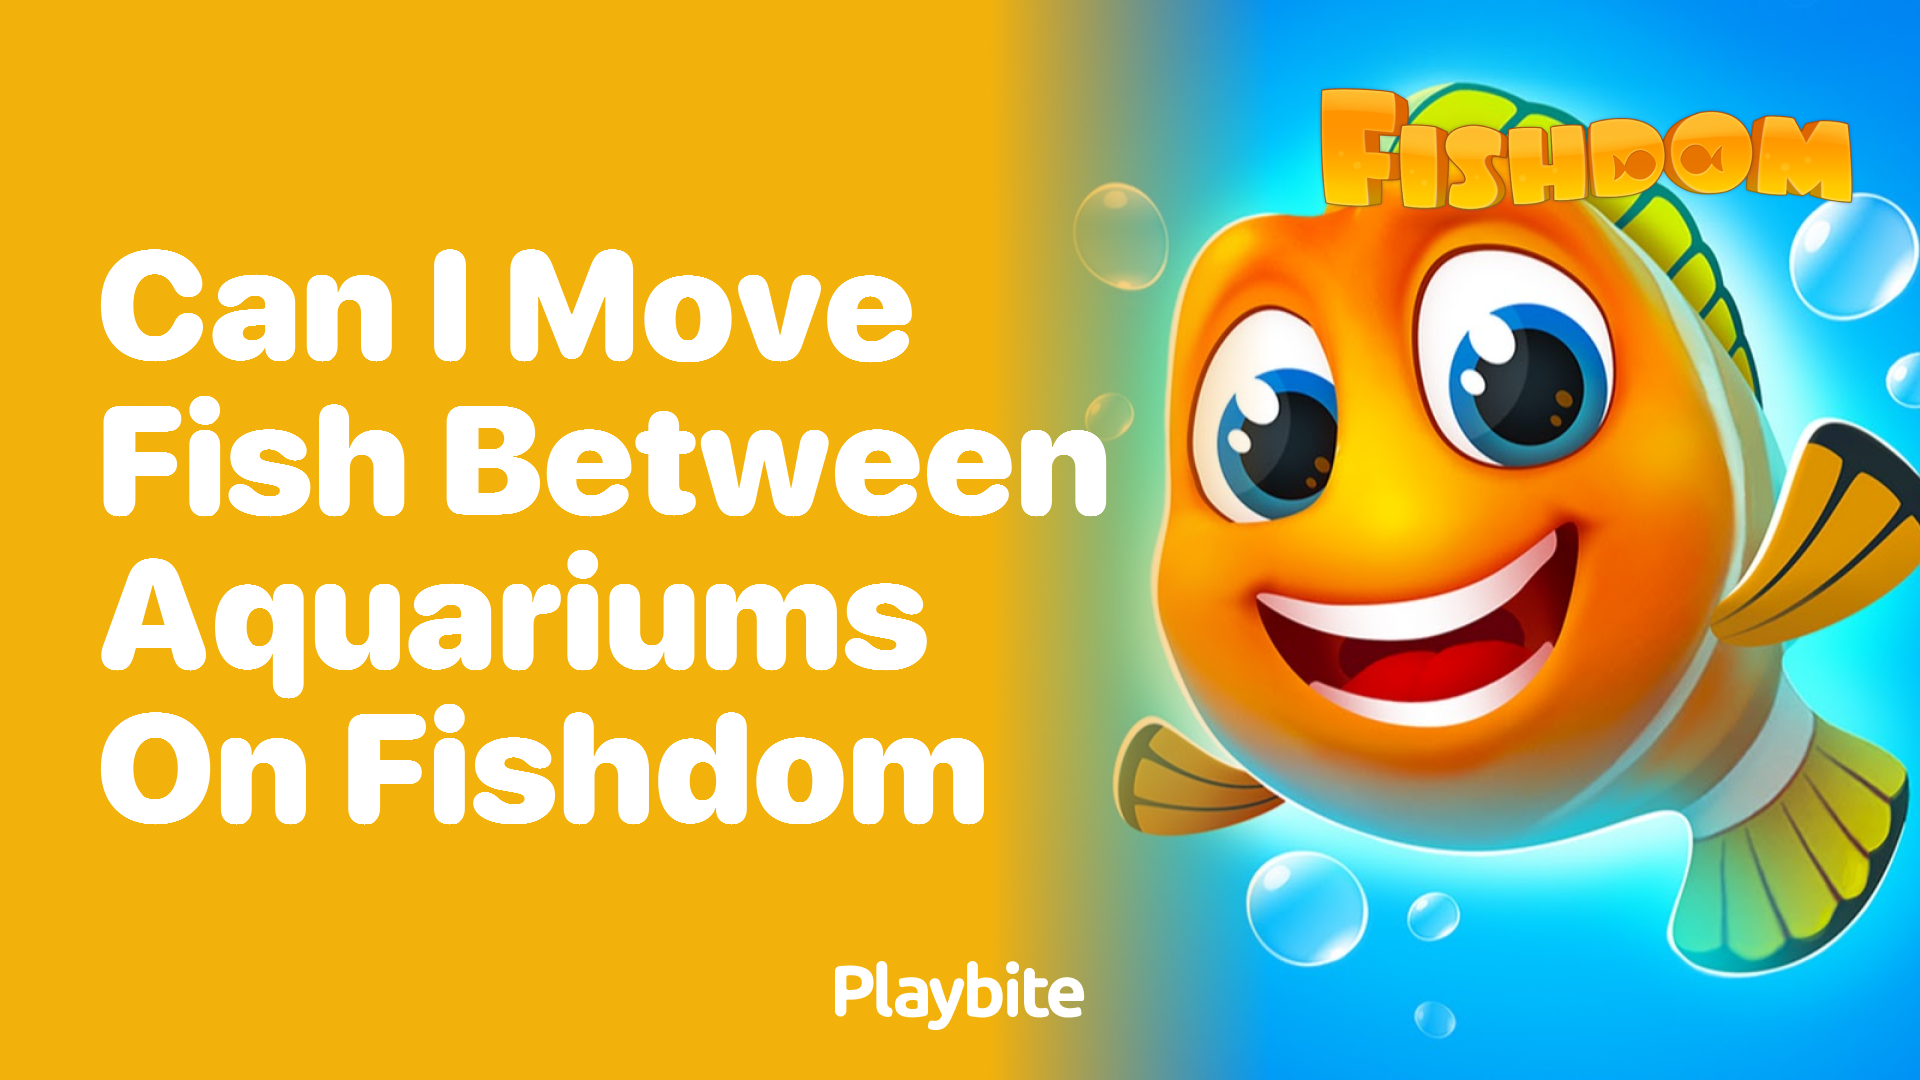 Can I Move Fish Between Aquariums on Fishdom?